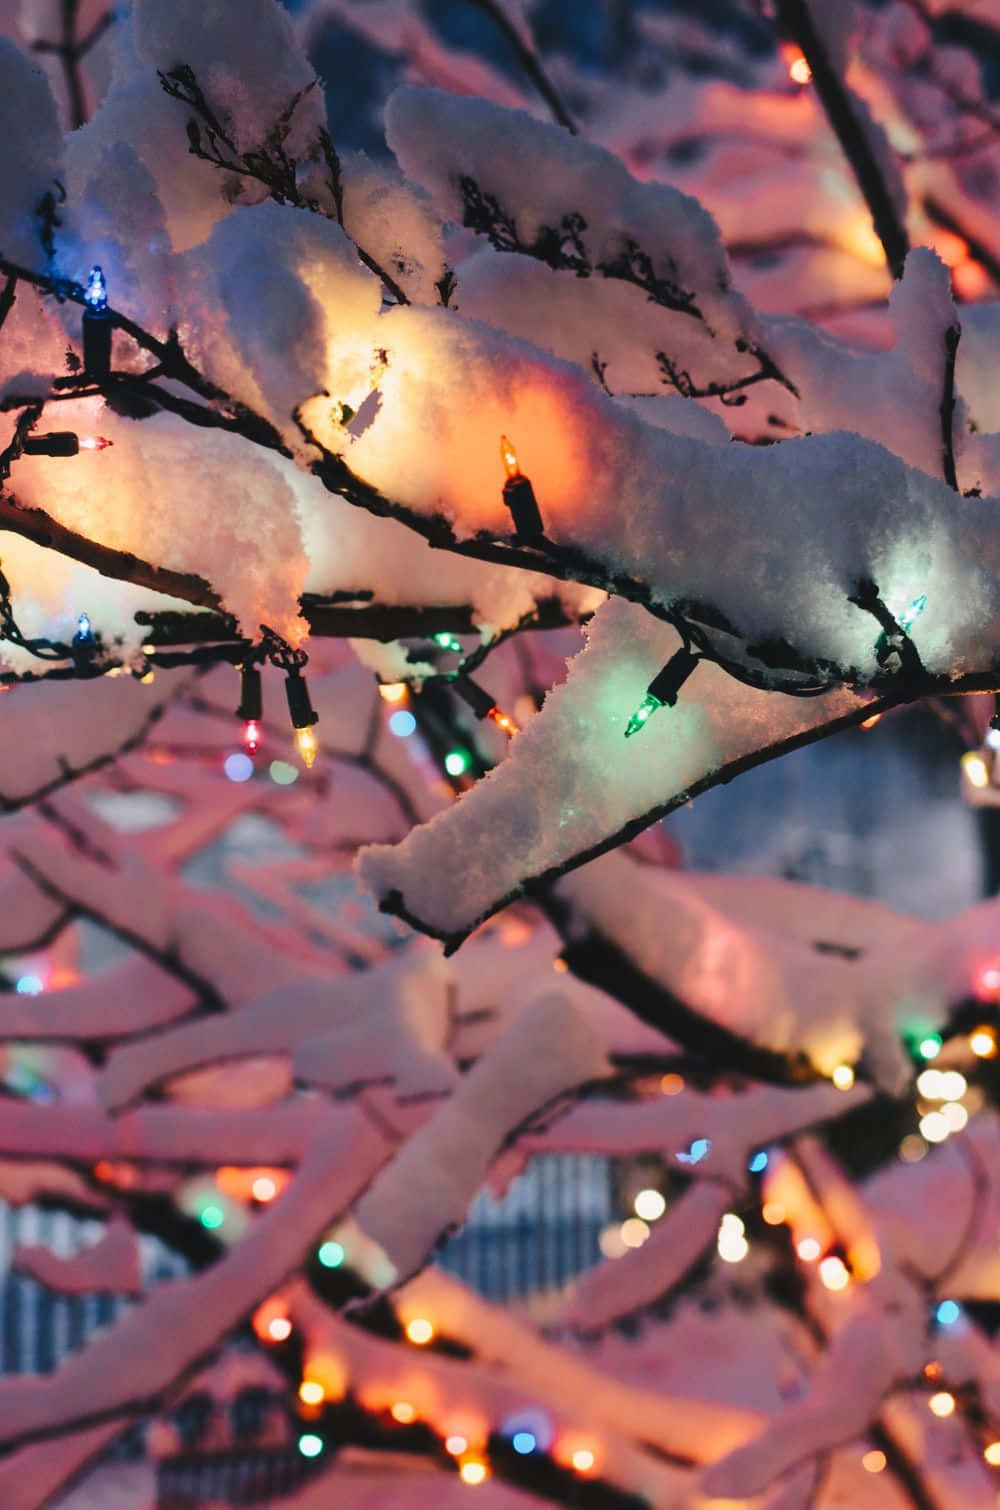 Celebrate winter in the warmest way possible. Wallpaper